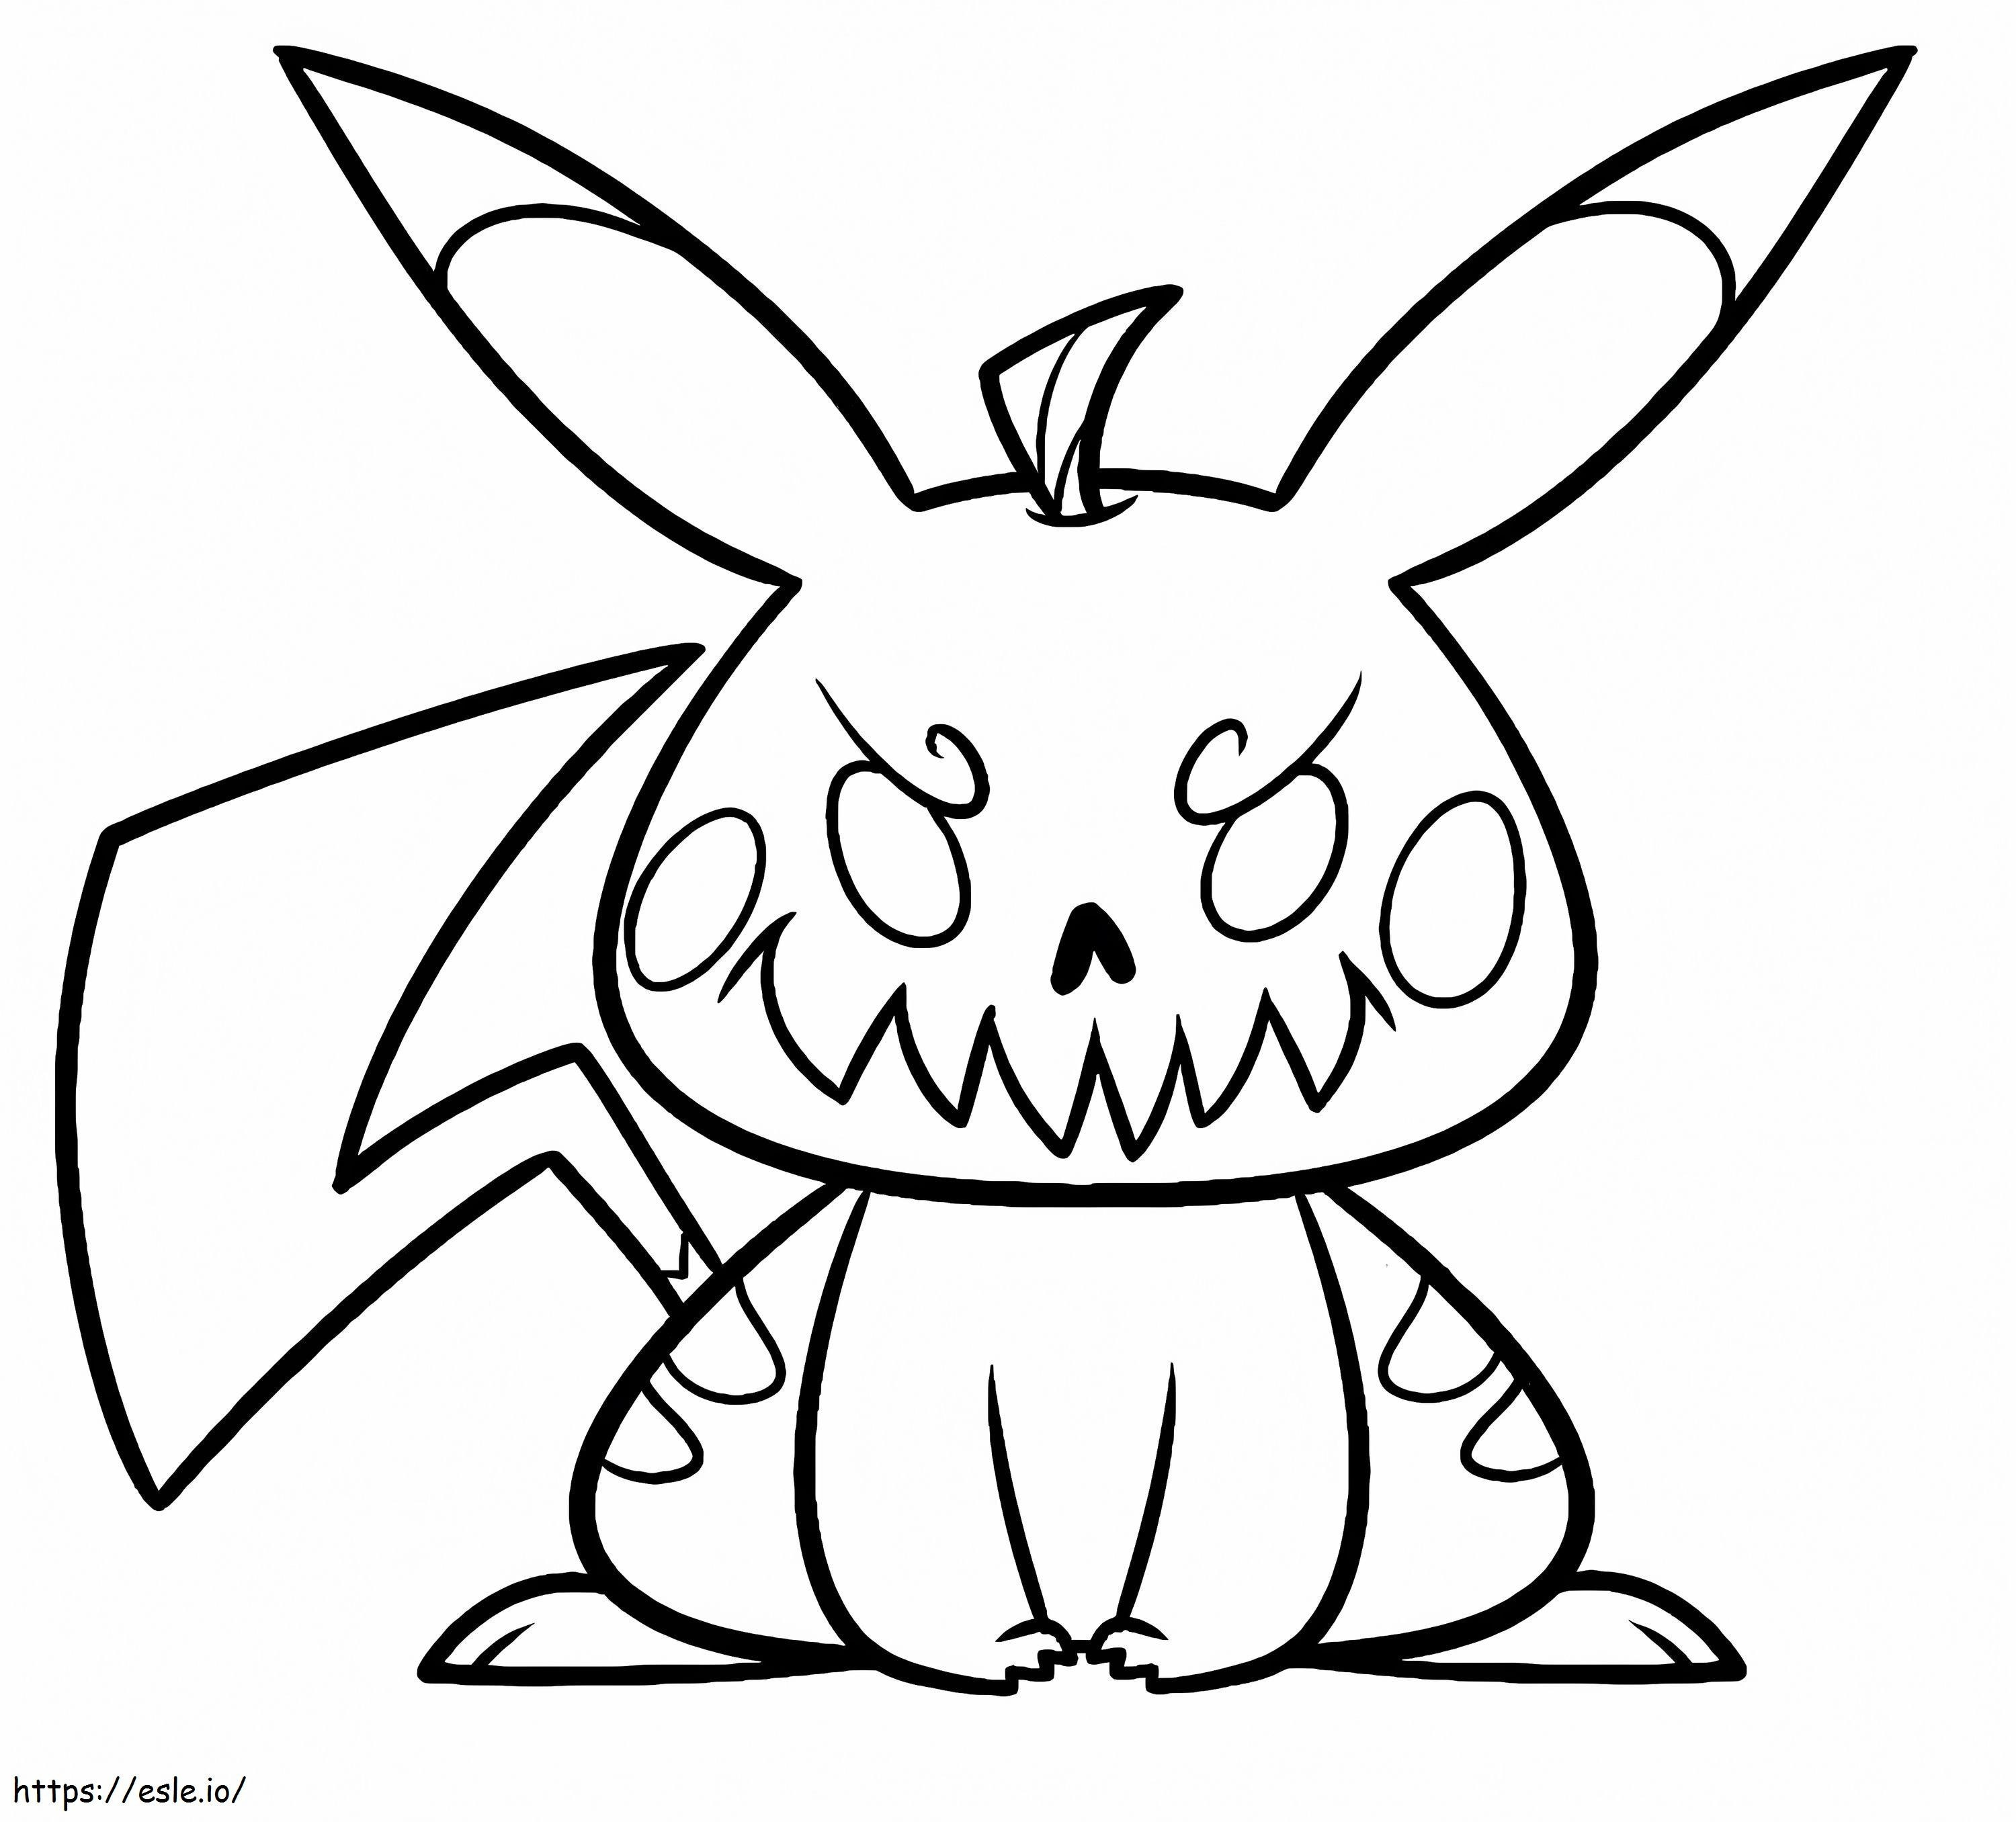 Coloriage Pikachu d'Halloween gratuit à imprimer dessin